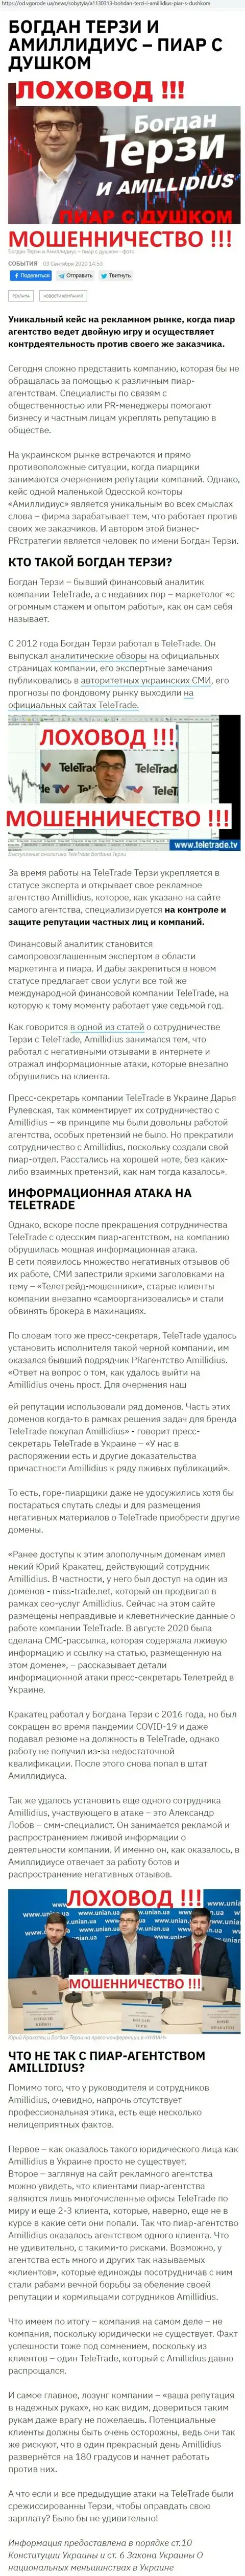 Богдан Терзи ненадежный партнер, инфа со слов бывшего работника фирмы Амиллидиус Ком